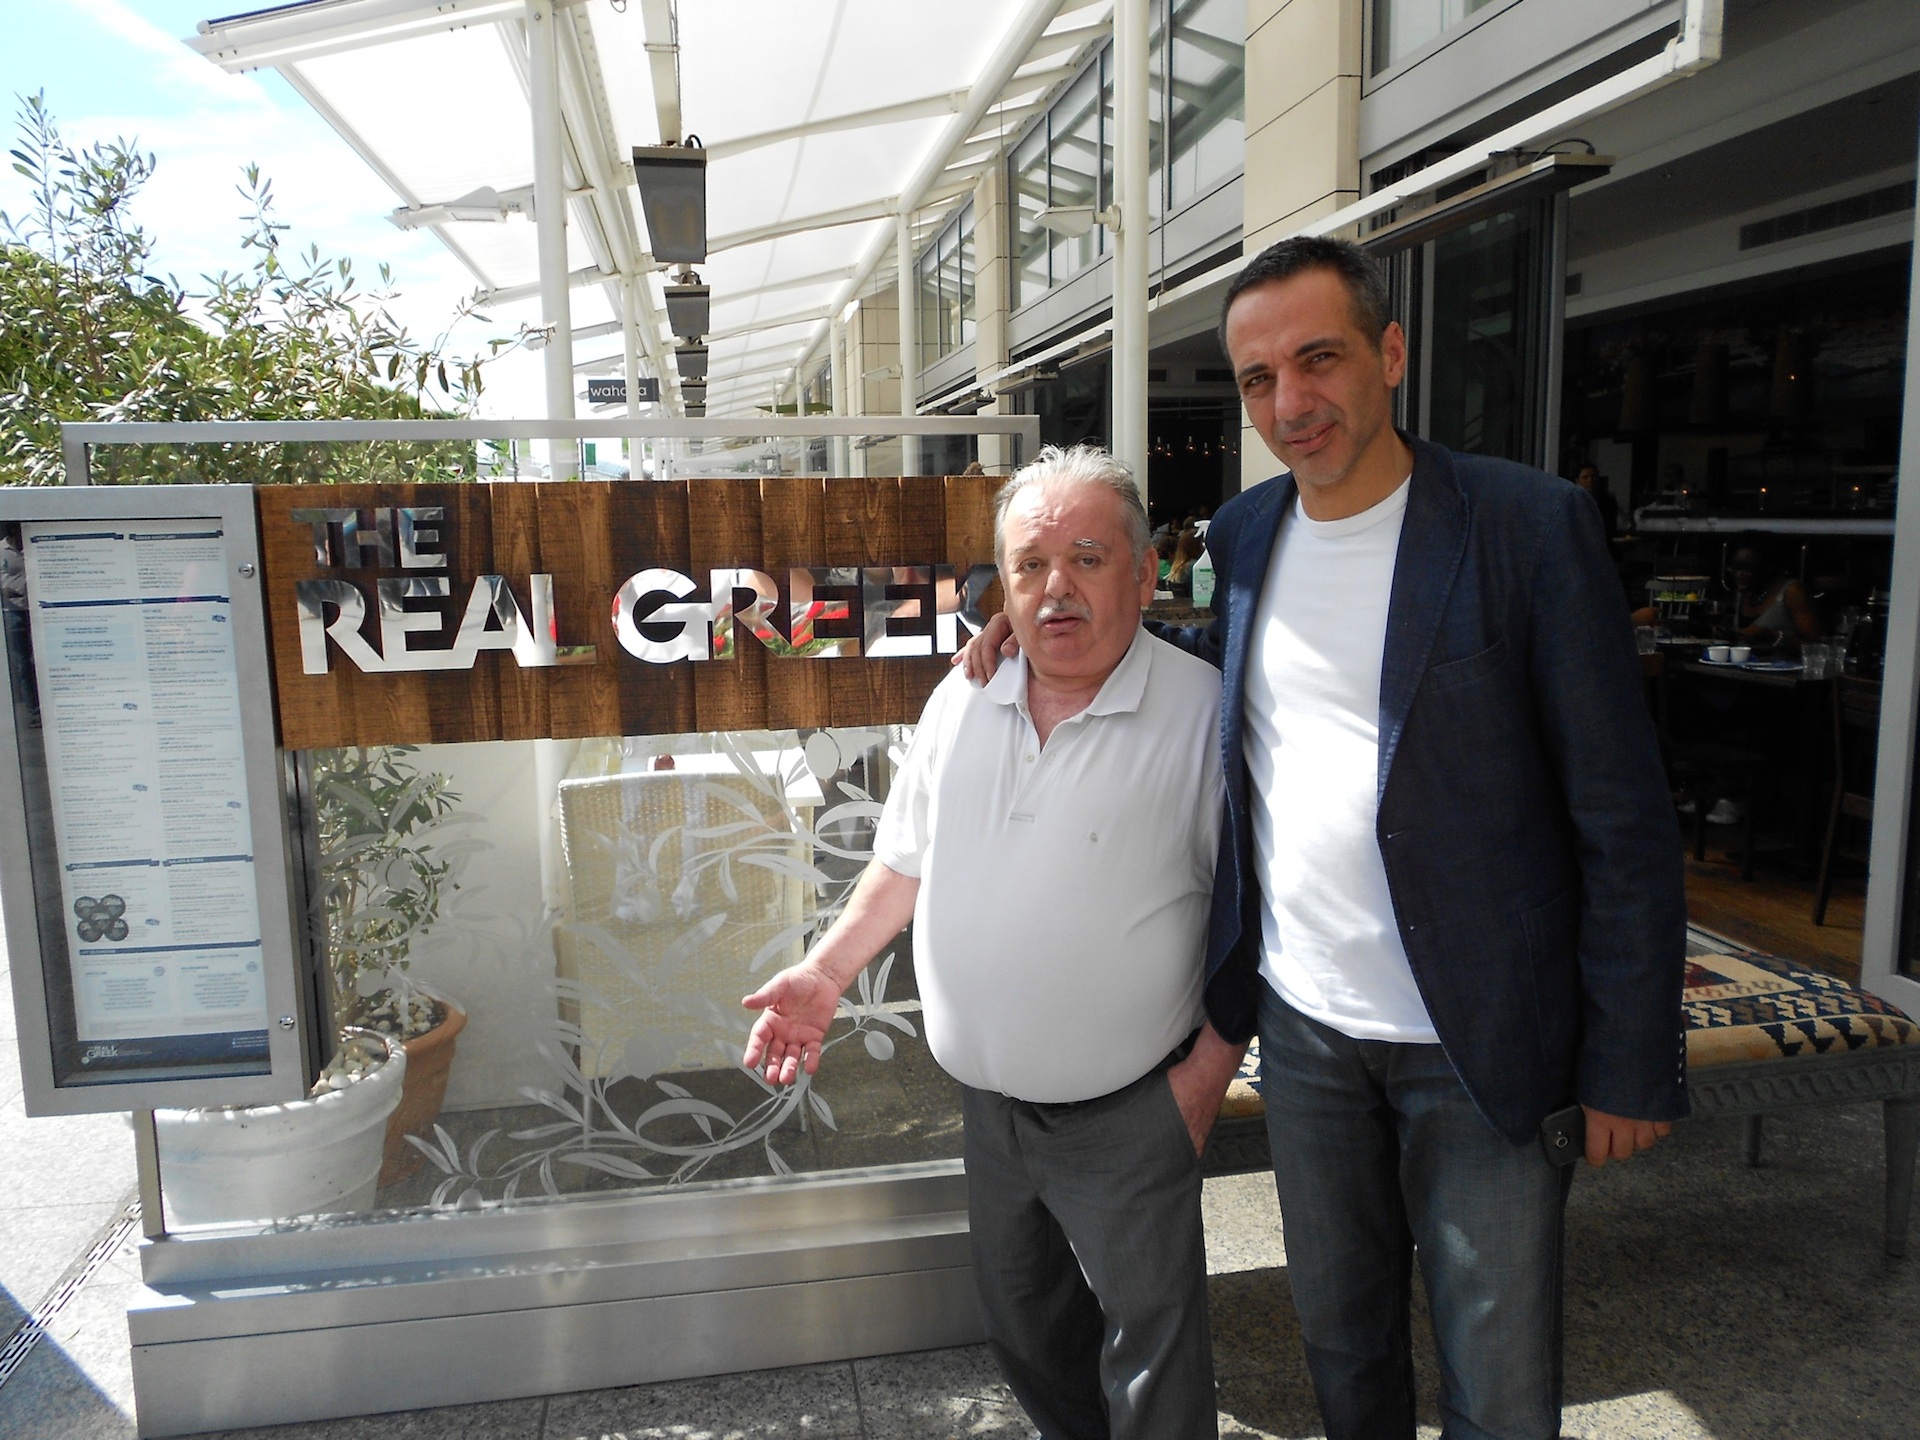 Ο Τζίμης Καρατζένης με τον γιό του Χρήστο, operation manager των έξι ελληνικών εστιατορίων Τhe Real Greek στο Λονδίνο